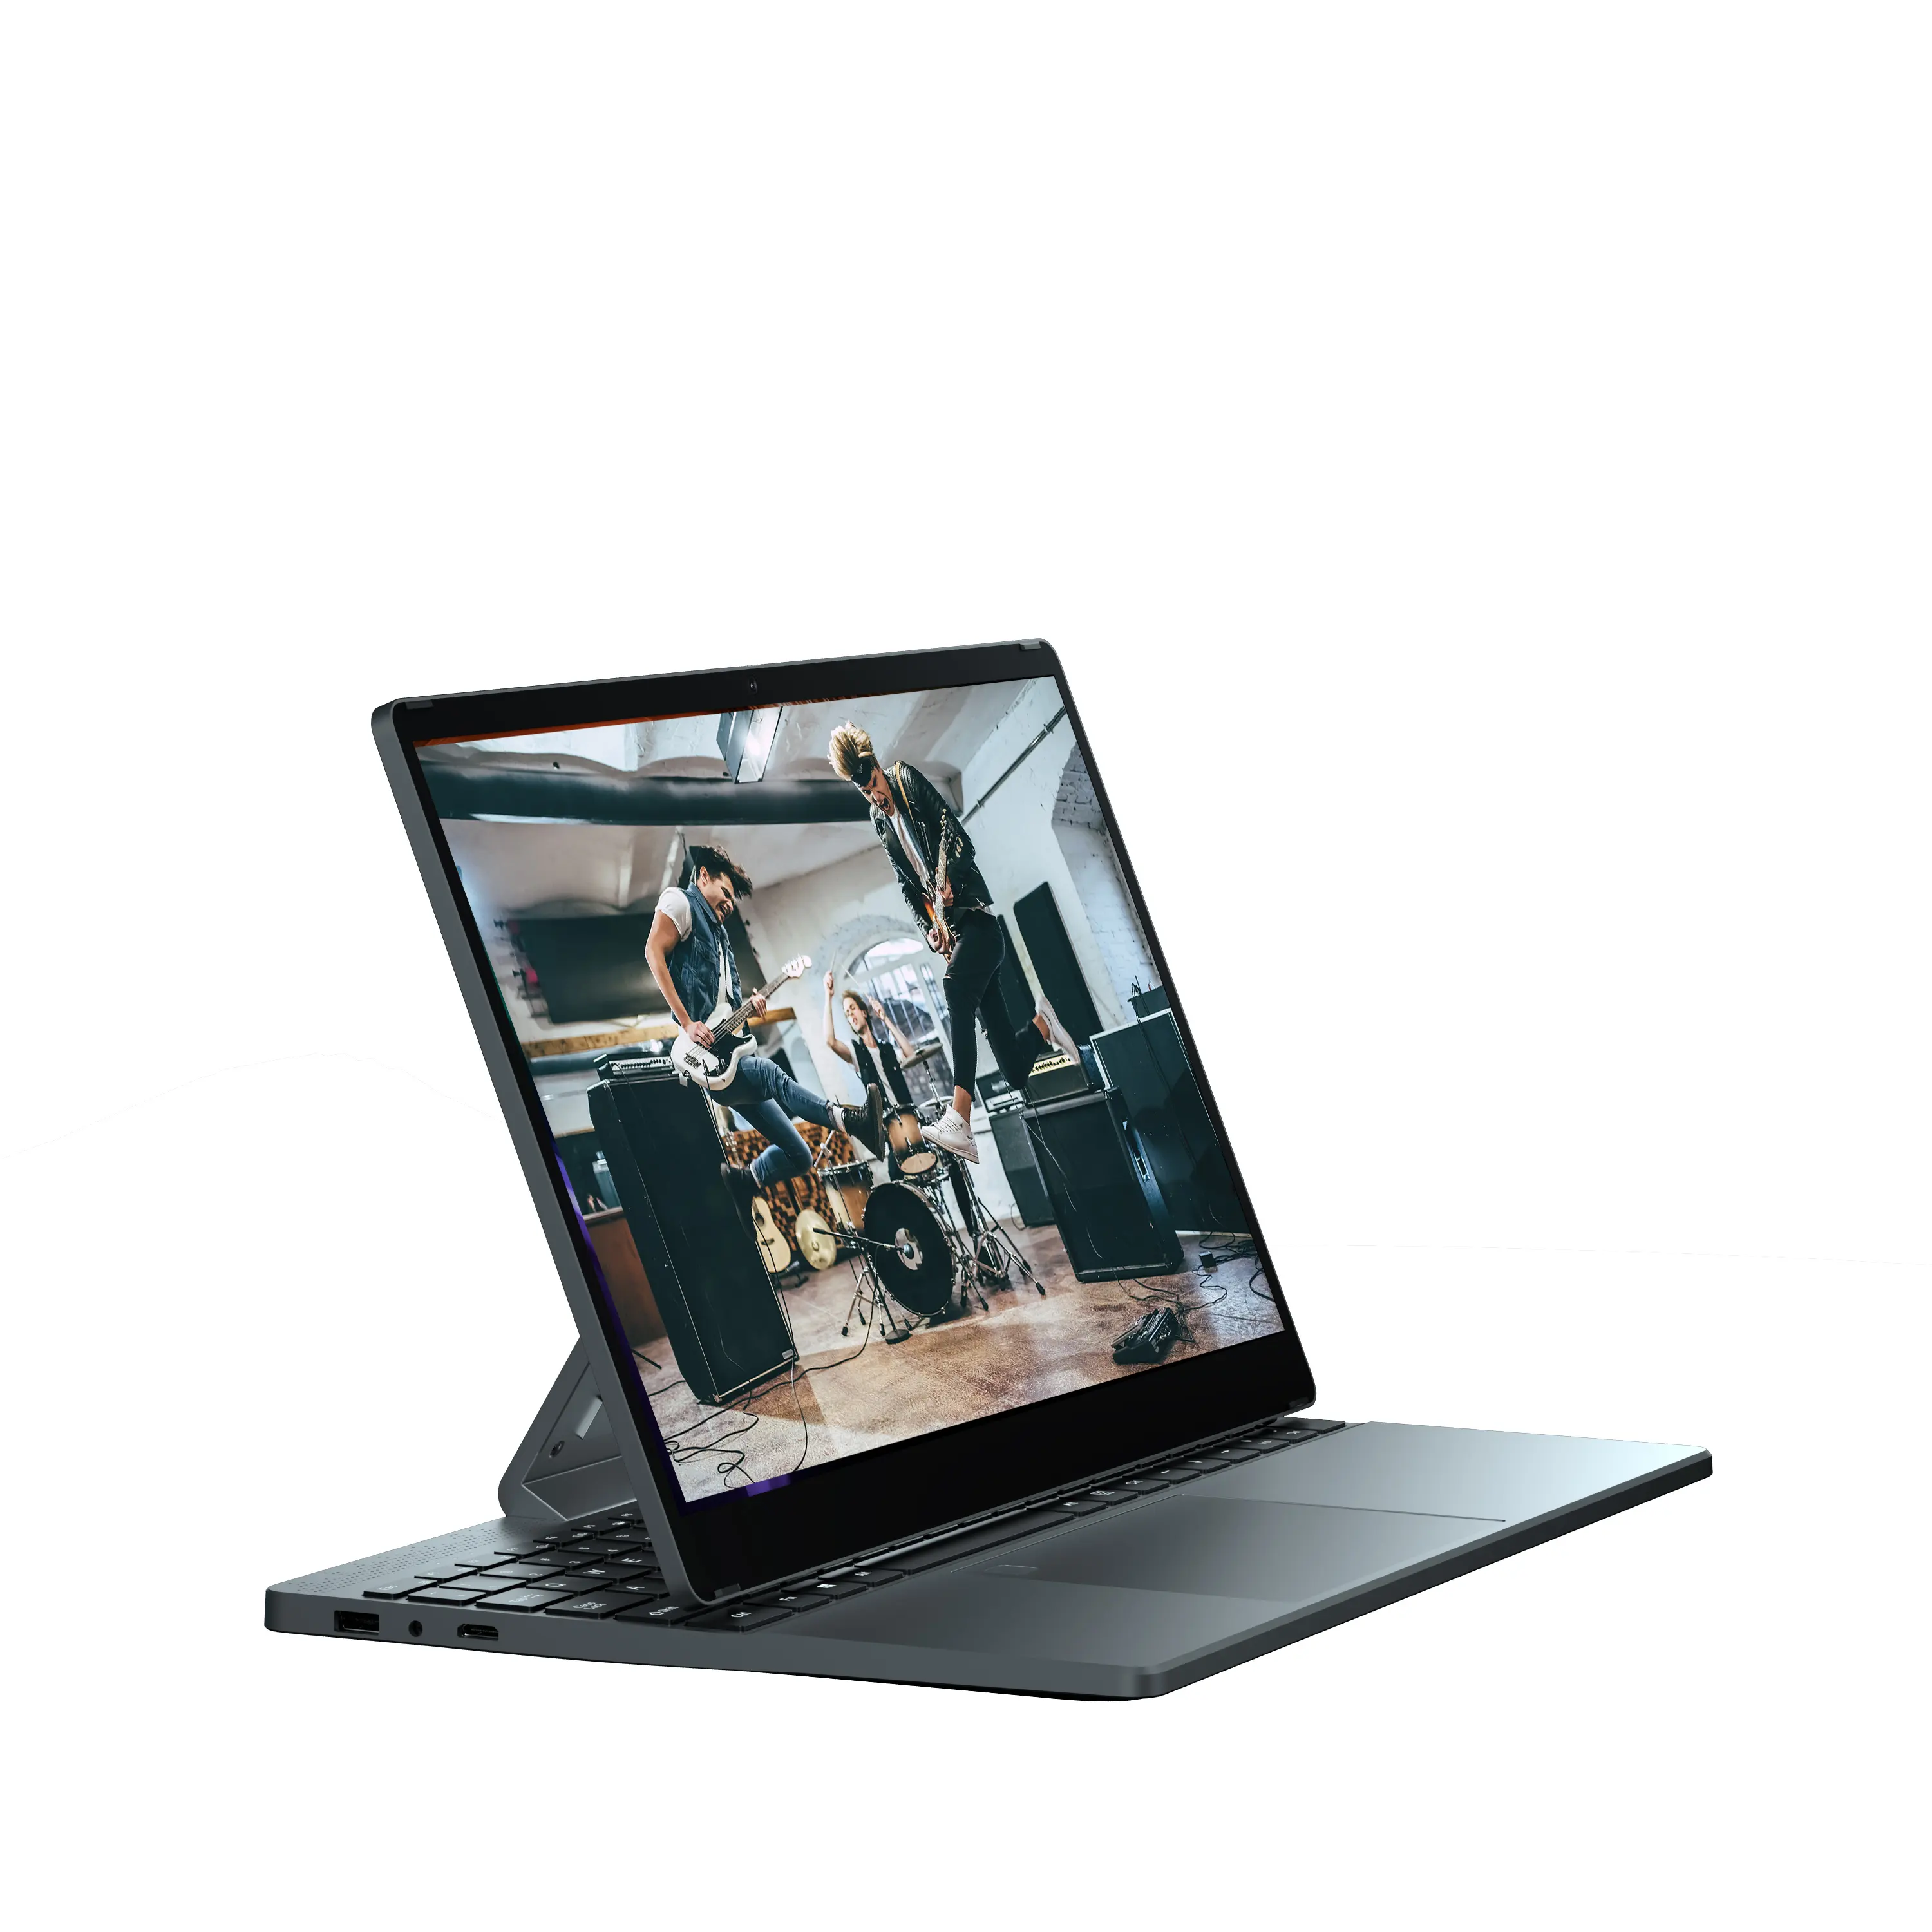 학생 교육 및 비즈니스 개인 및 가정용 도매 접이식 360 노트북